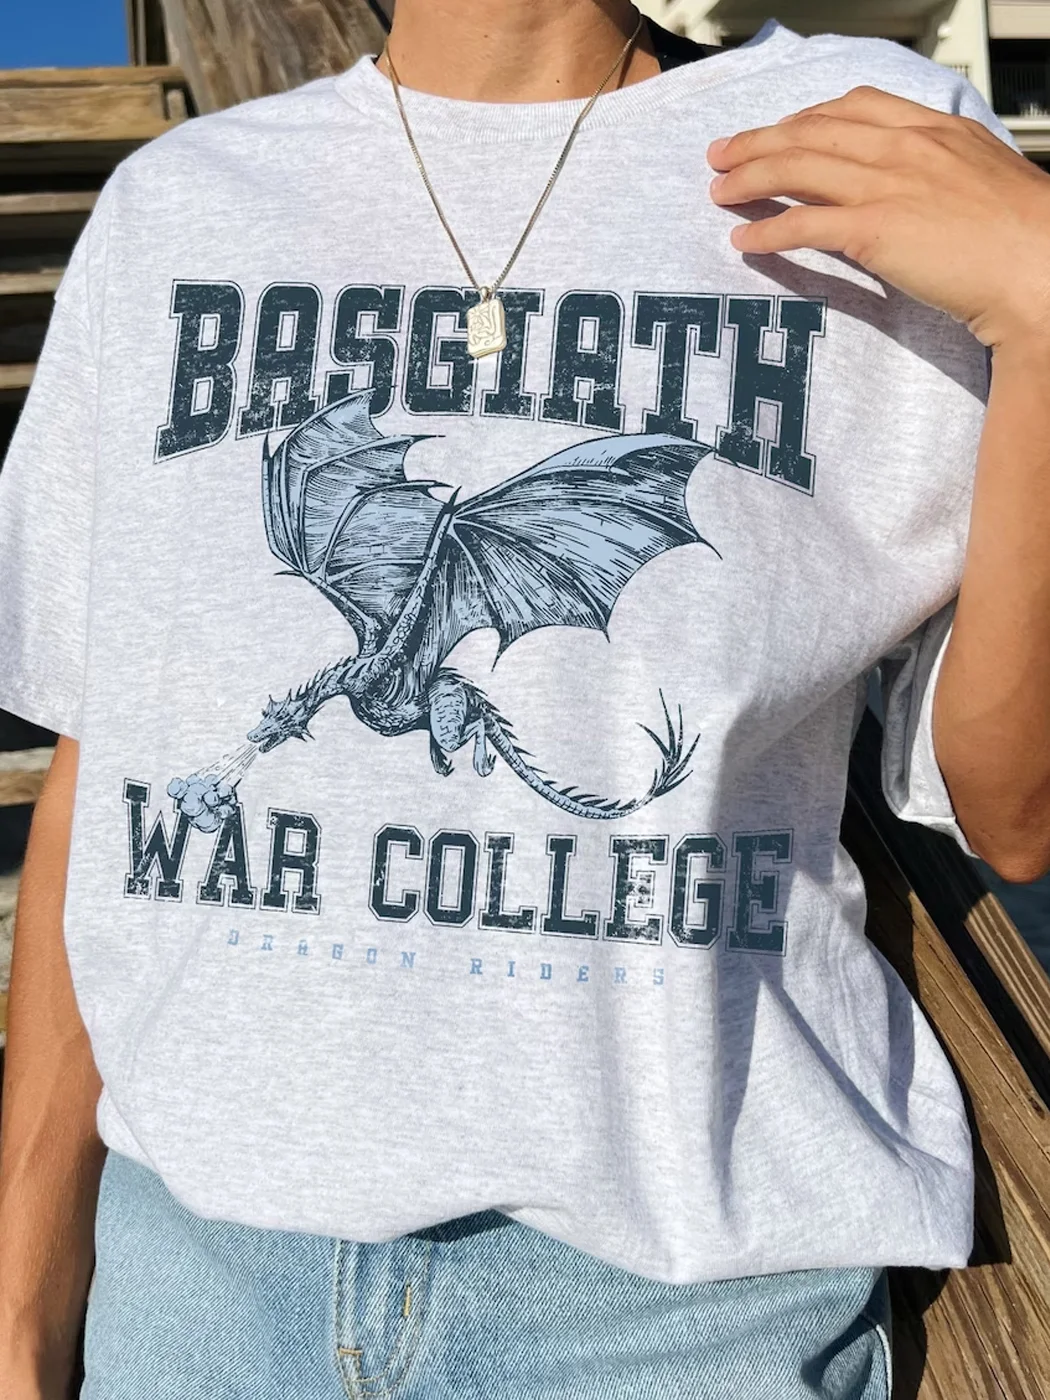 Basgiath War College Shirt / DarkAcademias /Darkacademias